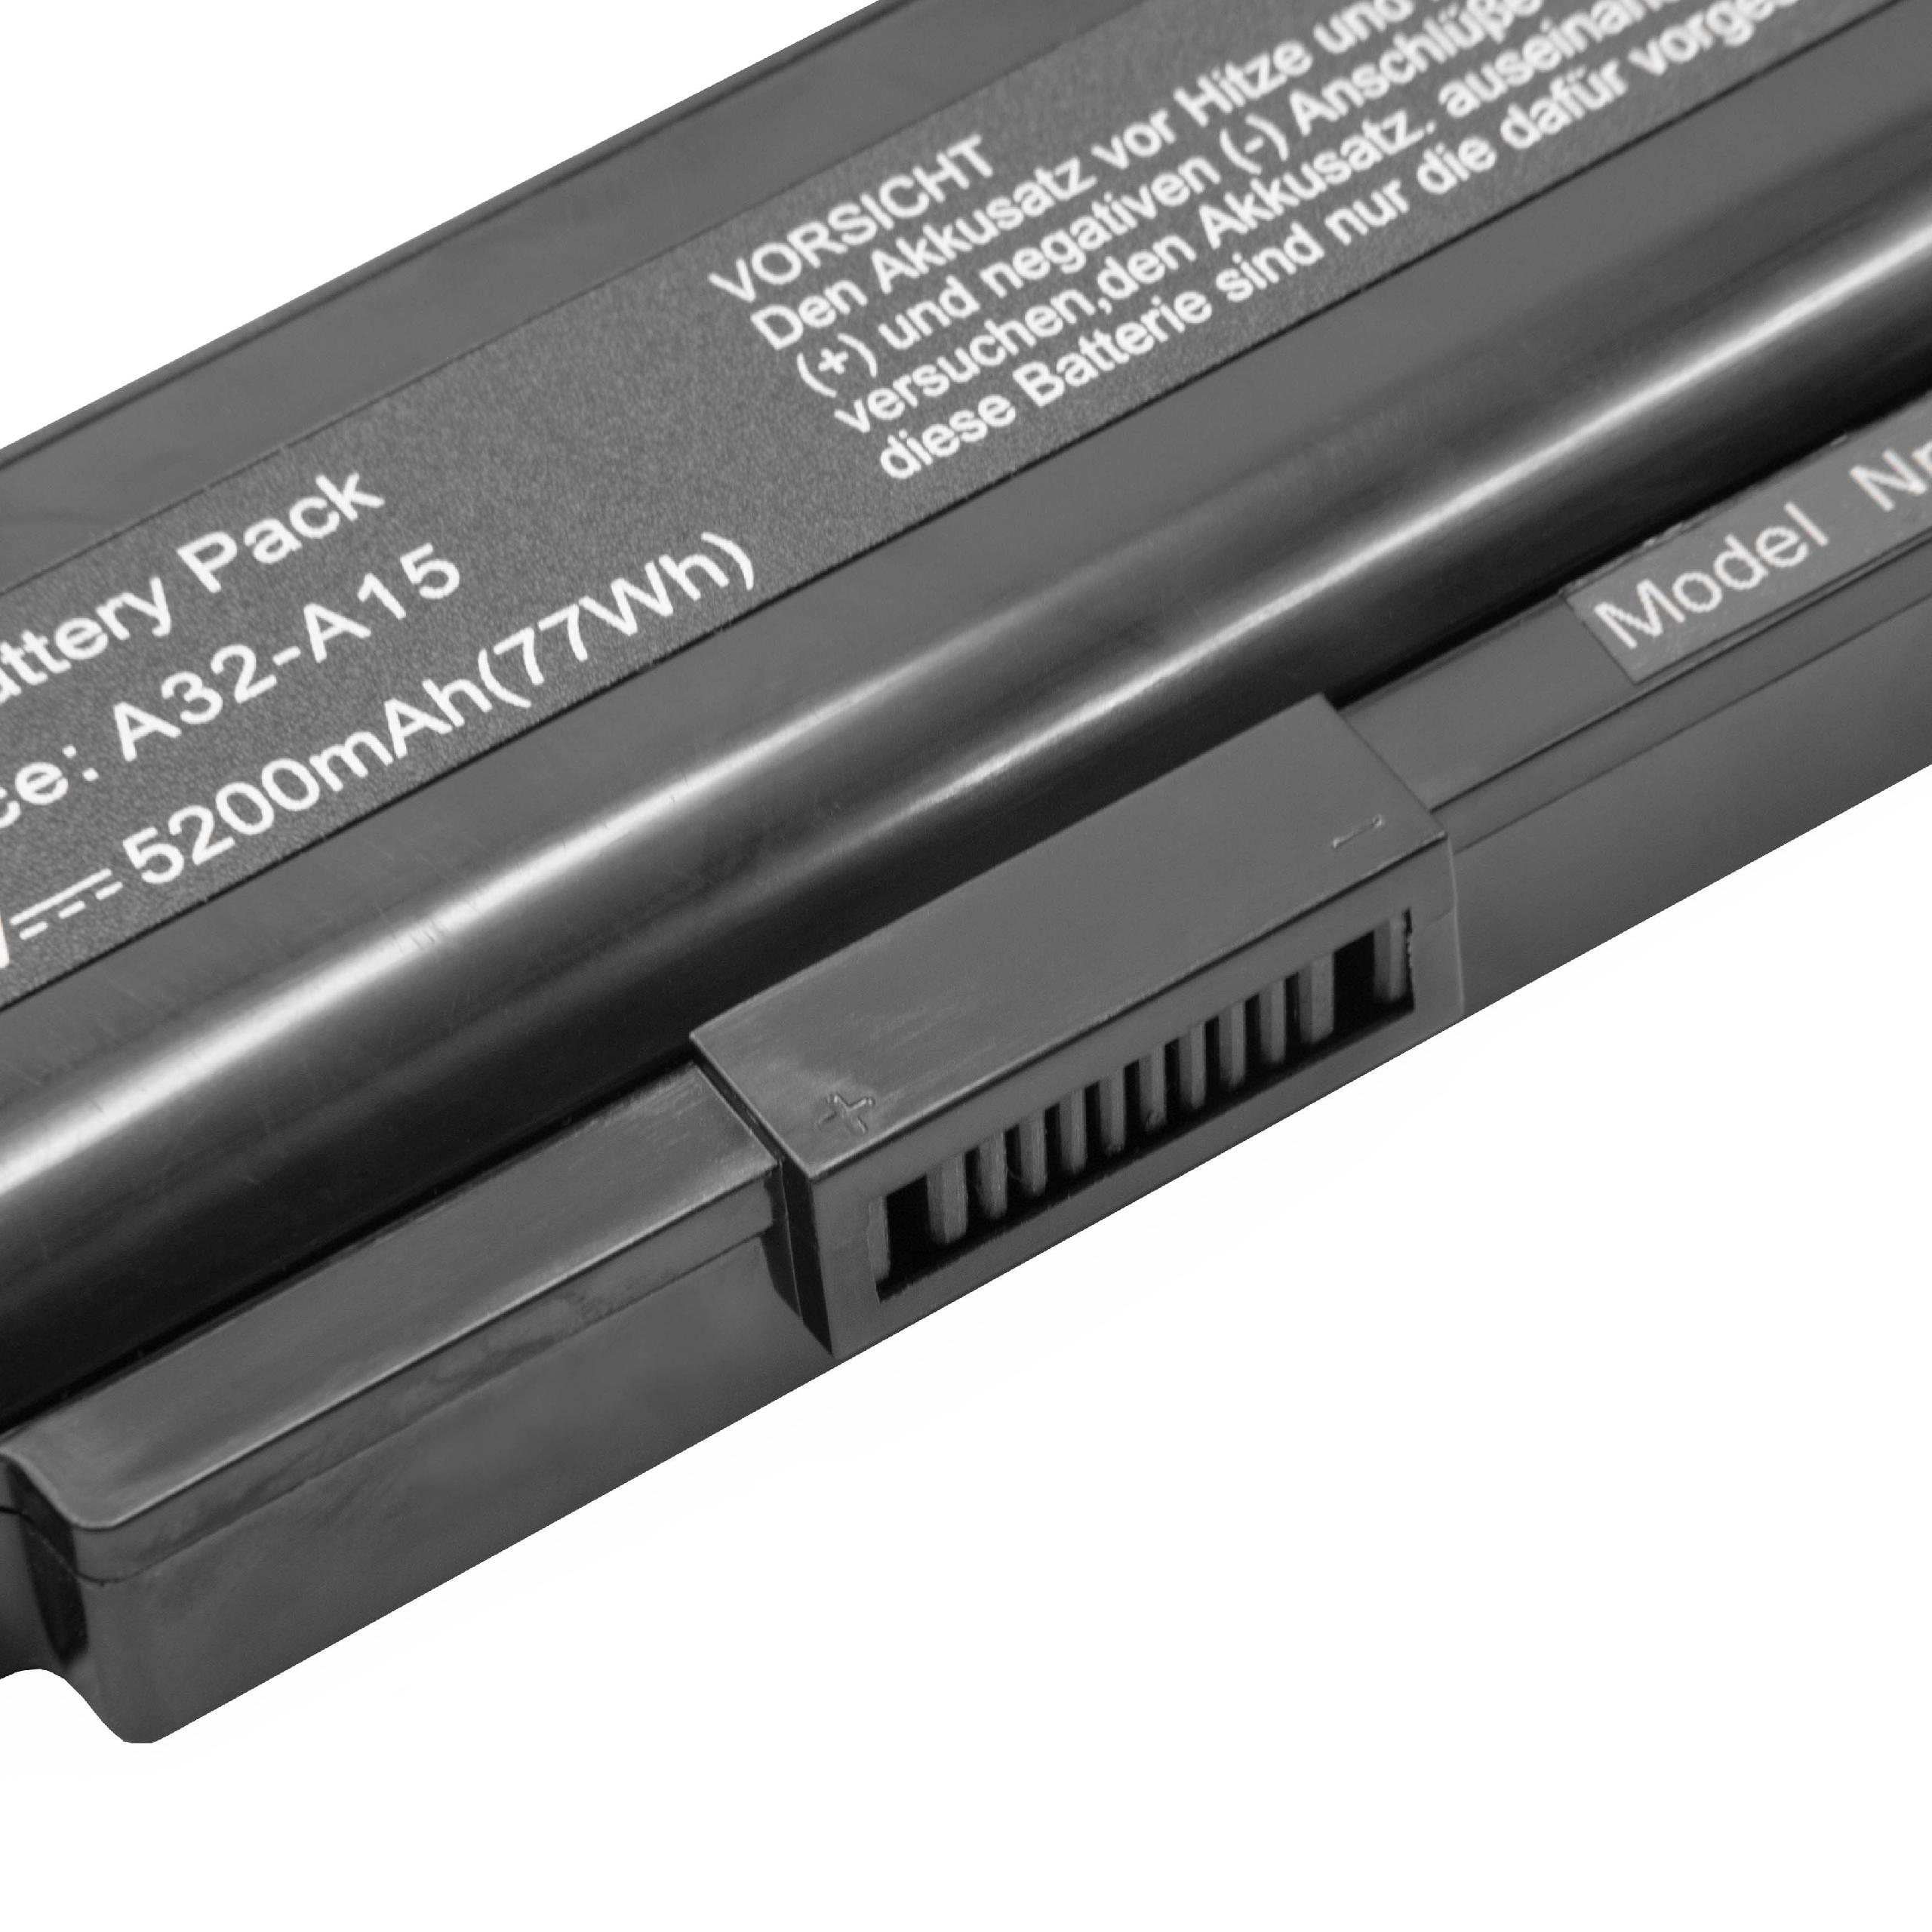 Batterie remplace Medion A32-A15, A41-A15, A42-A15 pour ordinateur portable - 5200mAh 14,8V Li-ion, noir